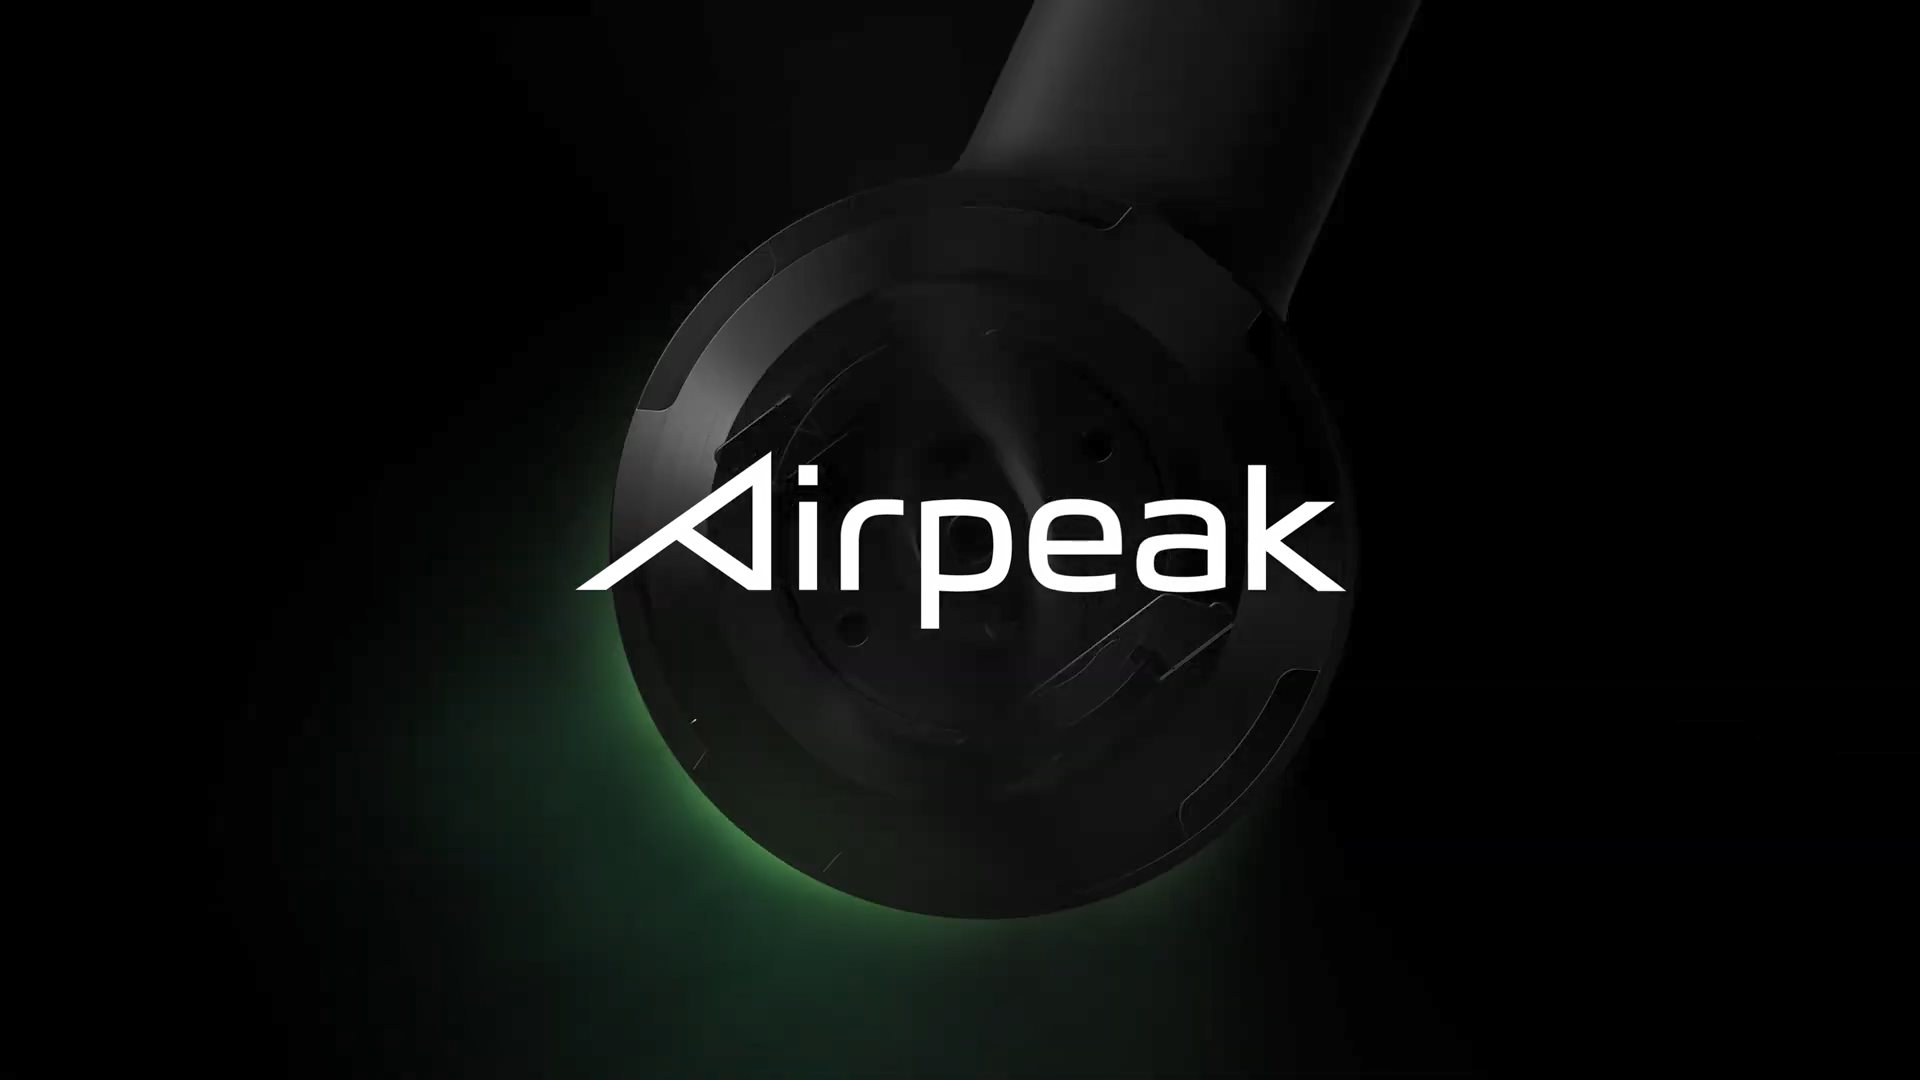 索尼启动无人机项目Airpeak 2021年春季正式发布